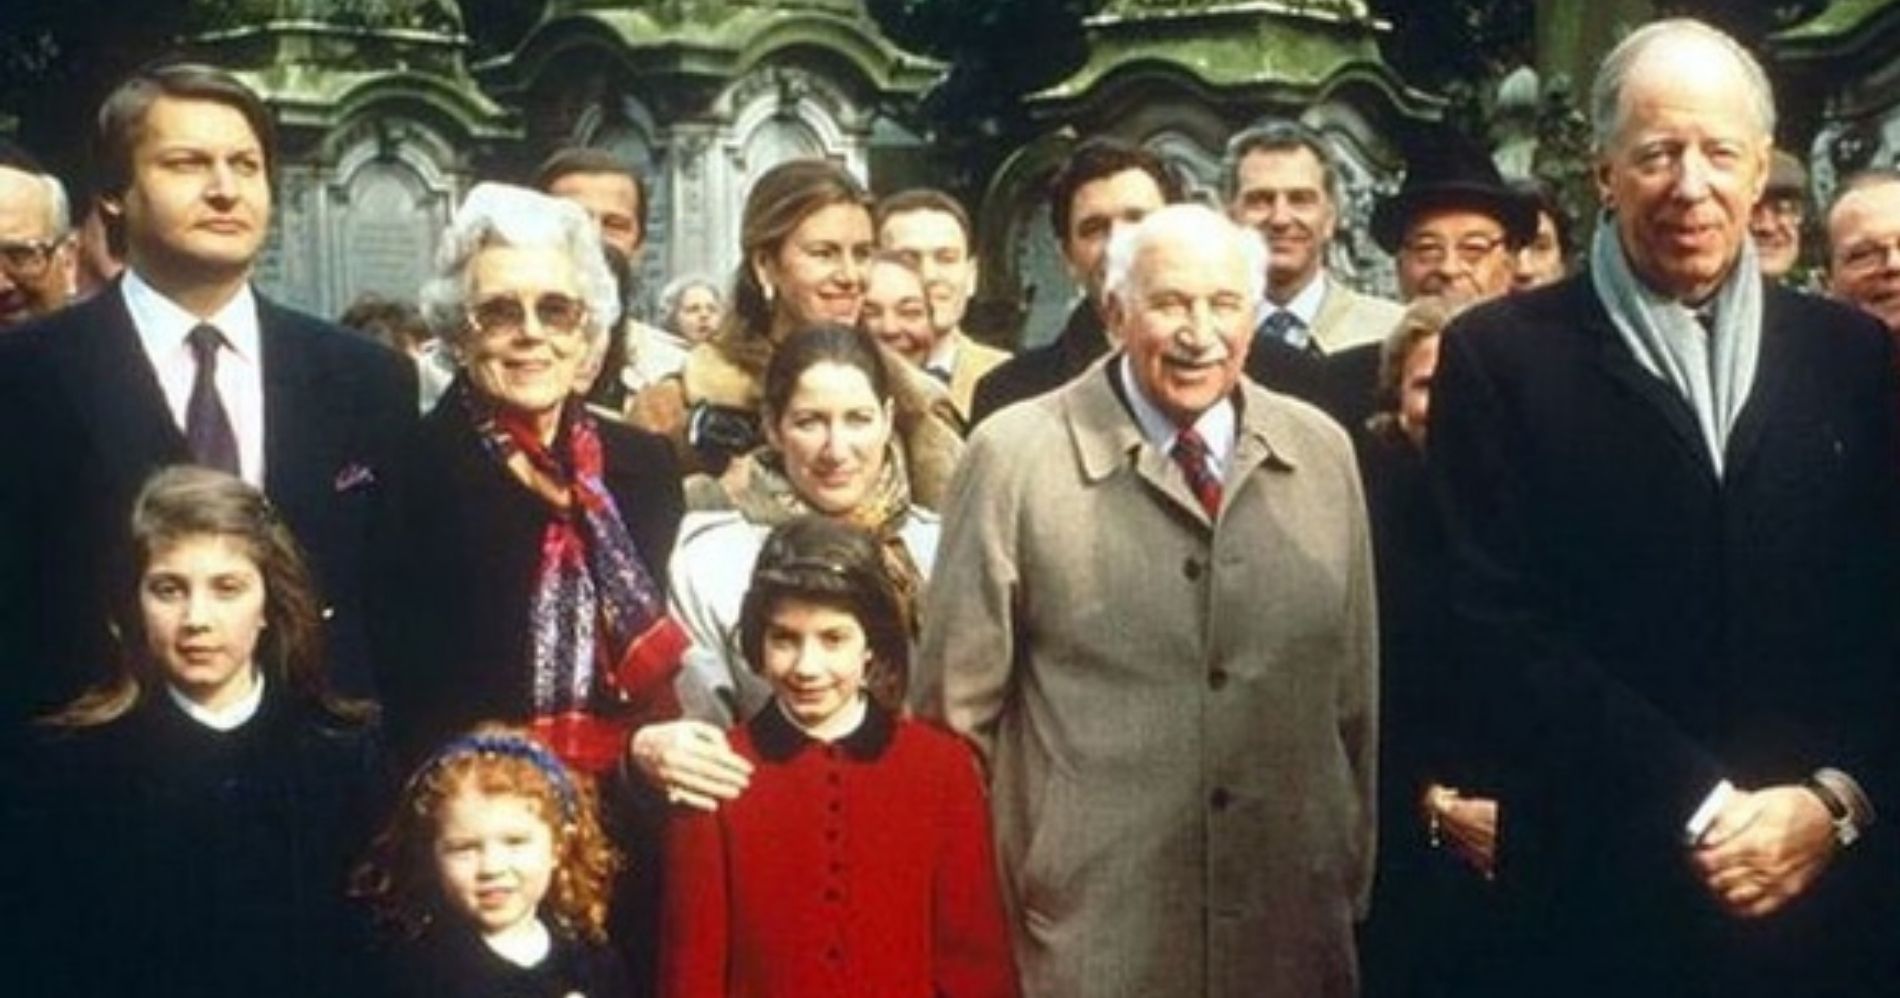 Rothschild Family - Pinterest